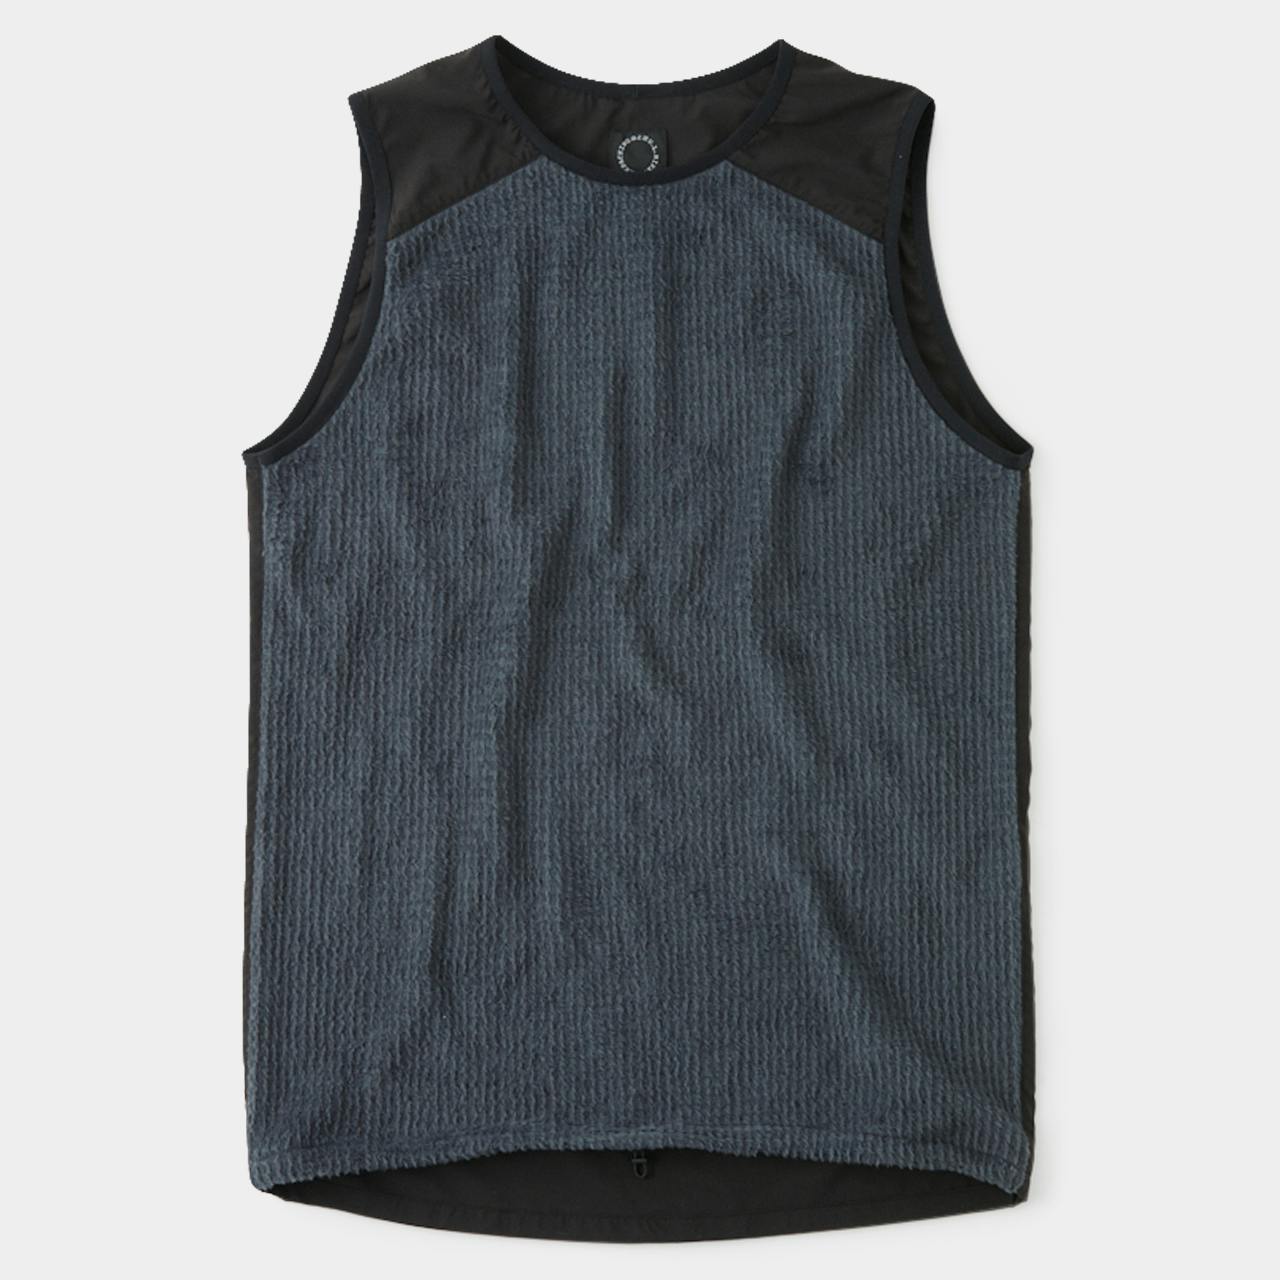 Alpha Vest<br>For Sale May 15, 18:00 JST<br>Restocked on Online Shop